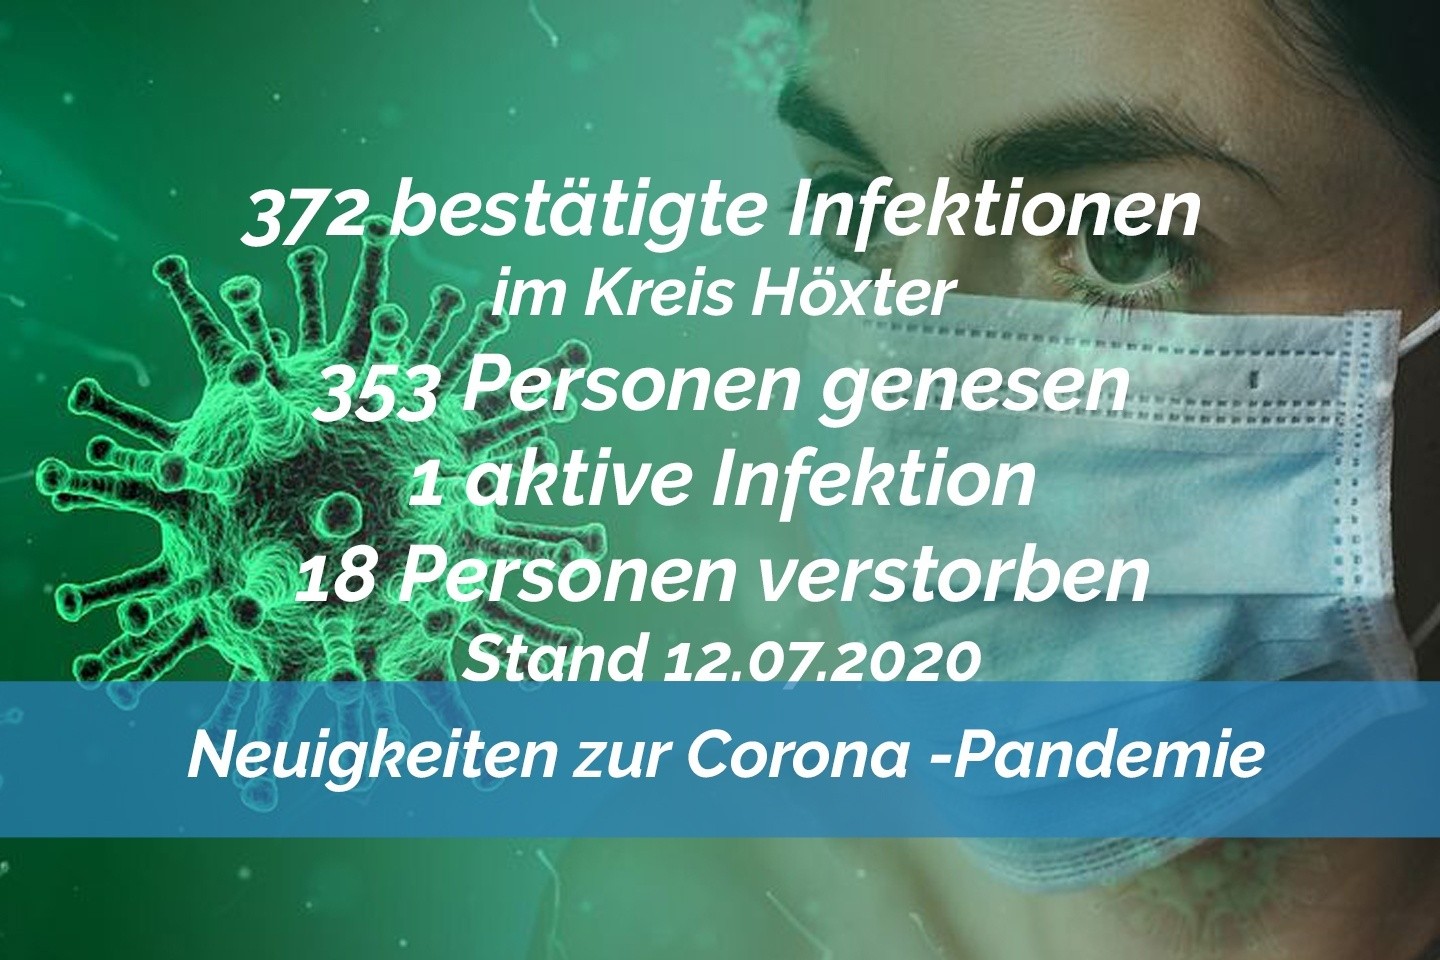 Update vom 12. Juli: 372 bestätigte Infektionen mit dem neuen Coronavirus im Kreis Höxter